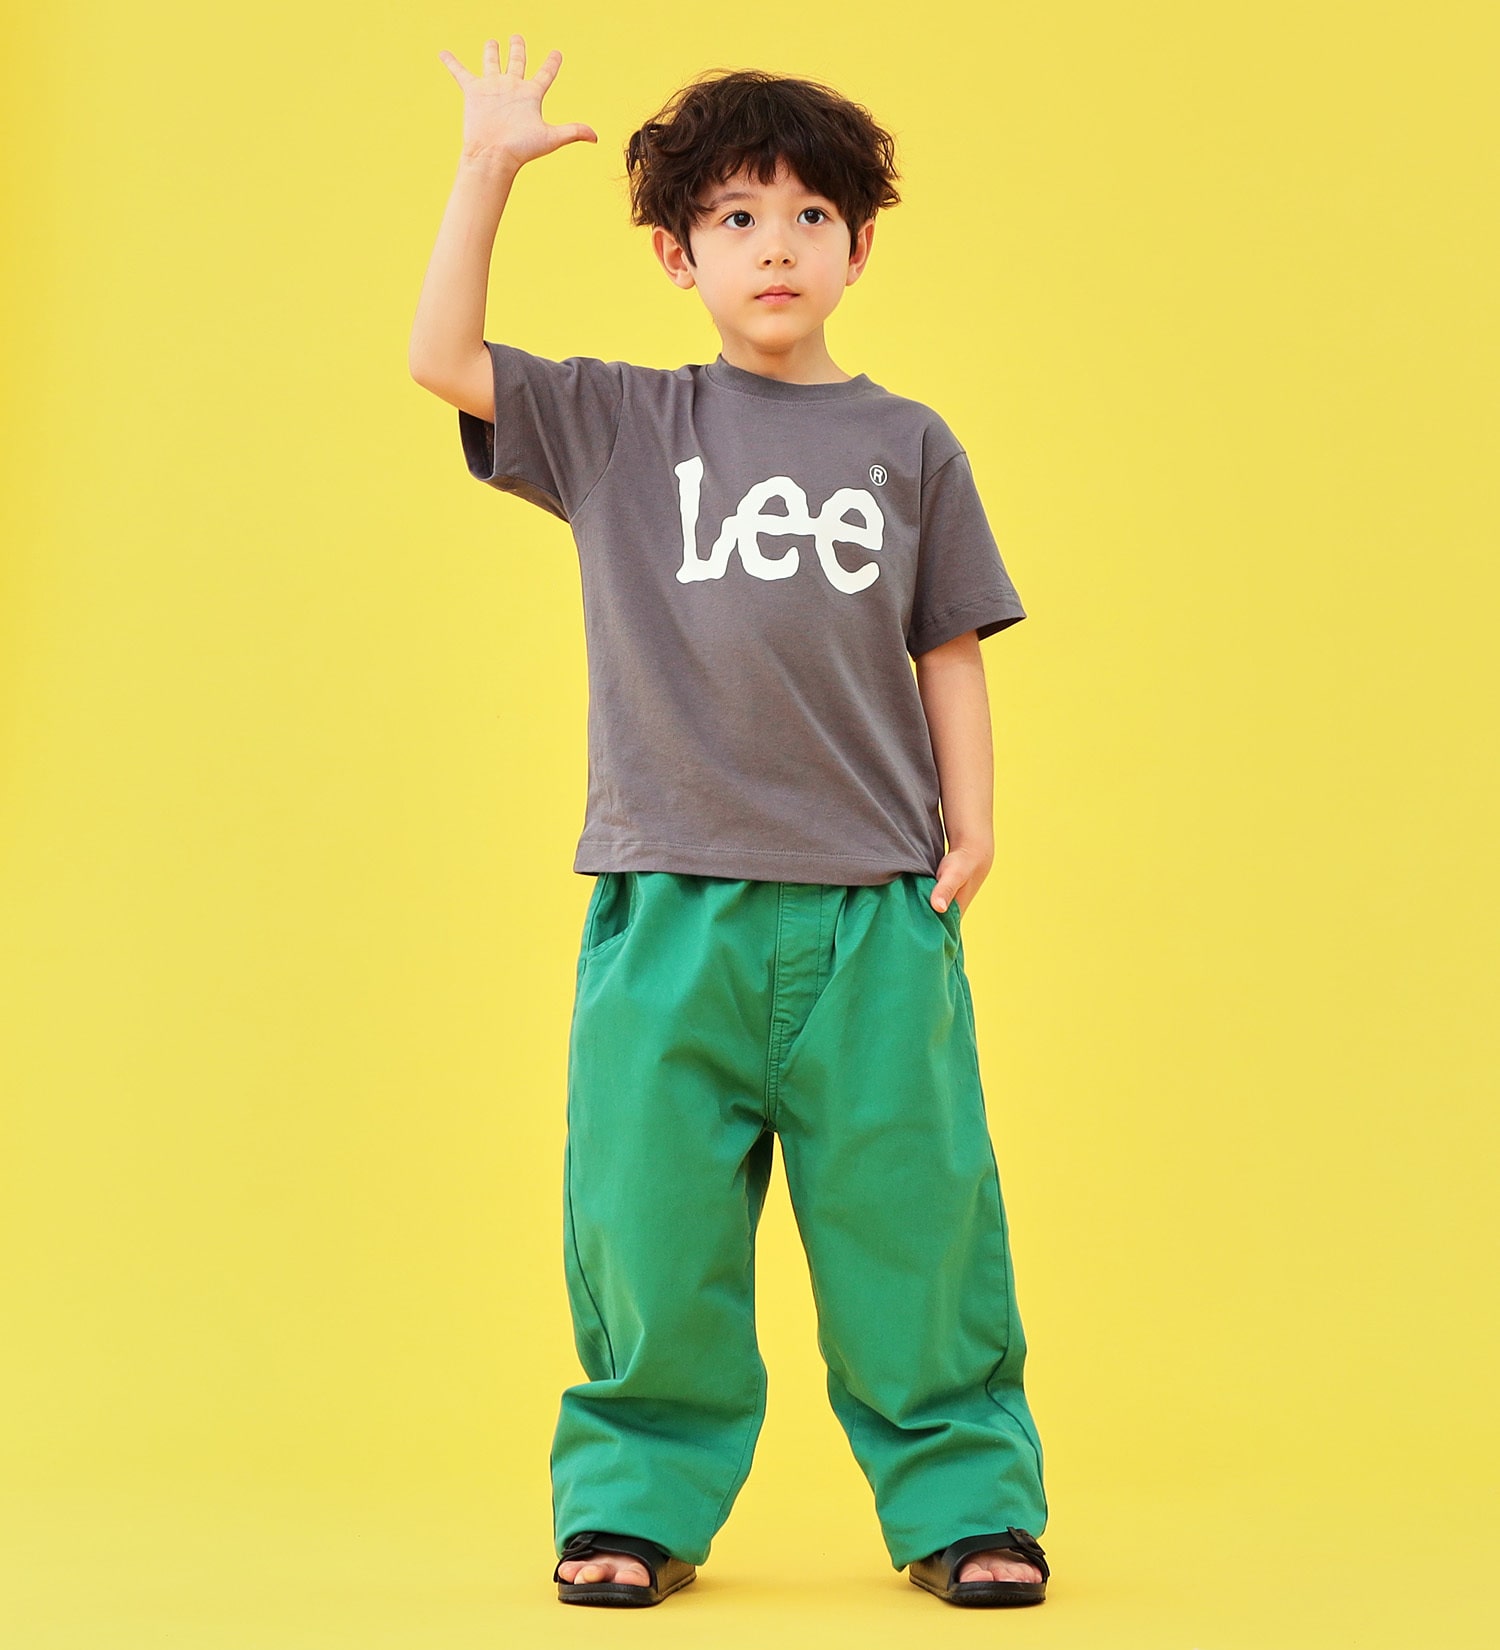 Lee(リー)の【1サイズでカバーできる】キッズ FLeeasy イージーパンツ|パンツ/パンツ/キッズ|グリーン